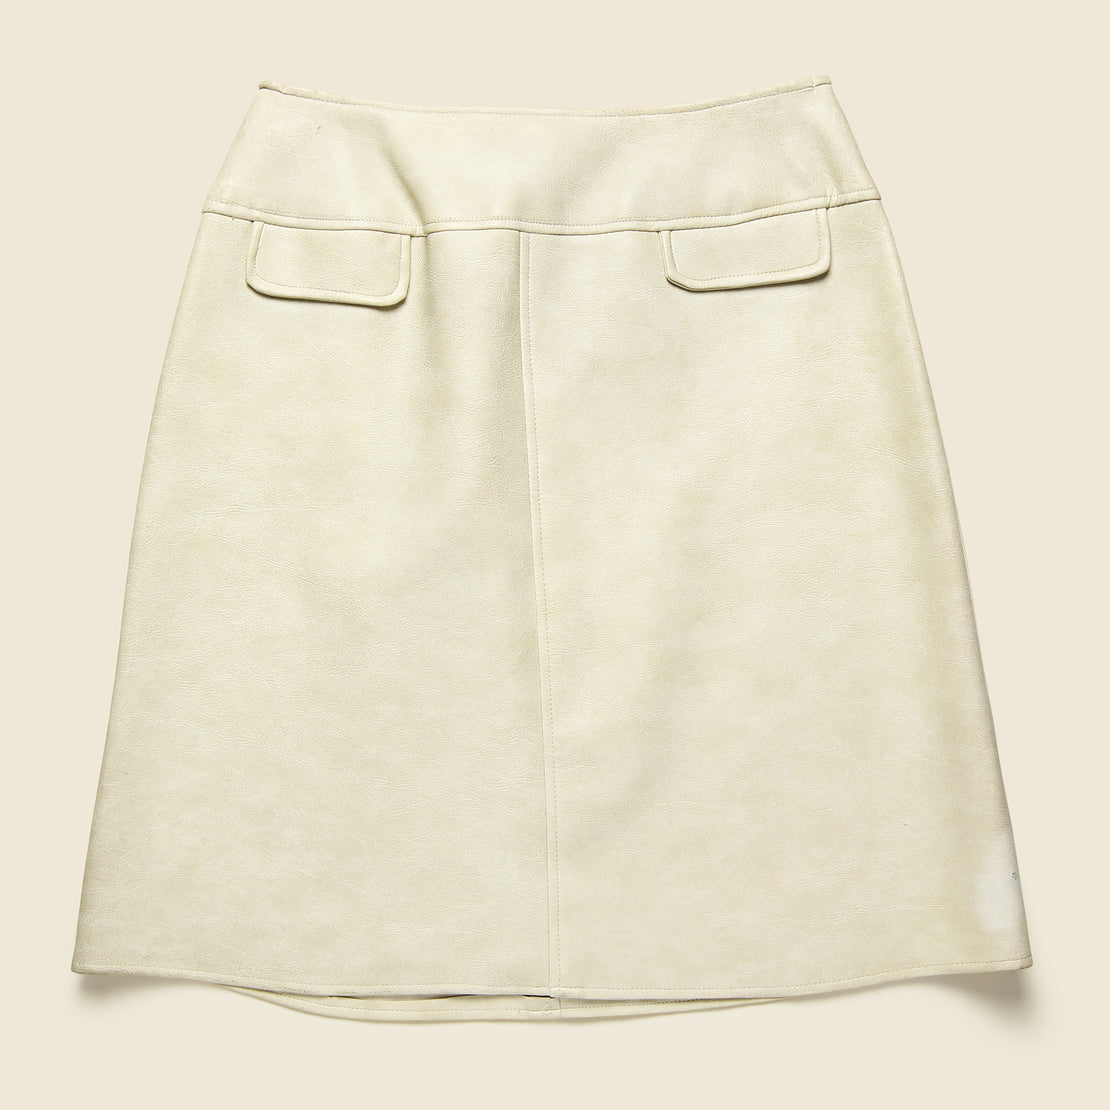 Vintage 1960s Union Leather Mini Skirt - Cream